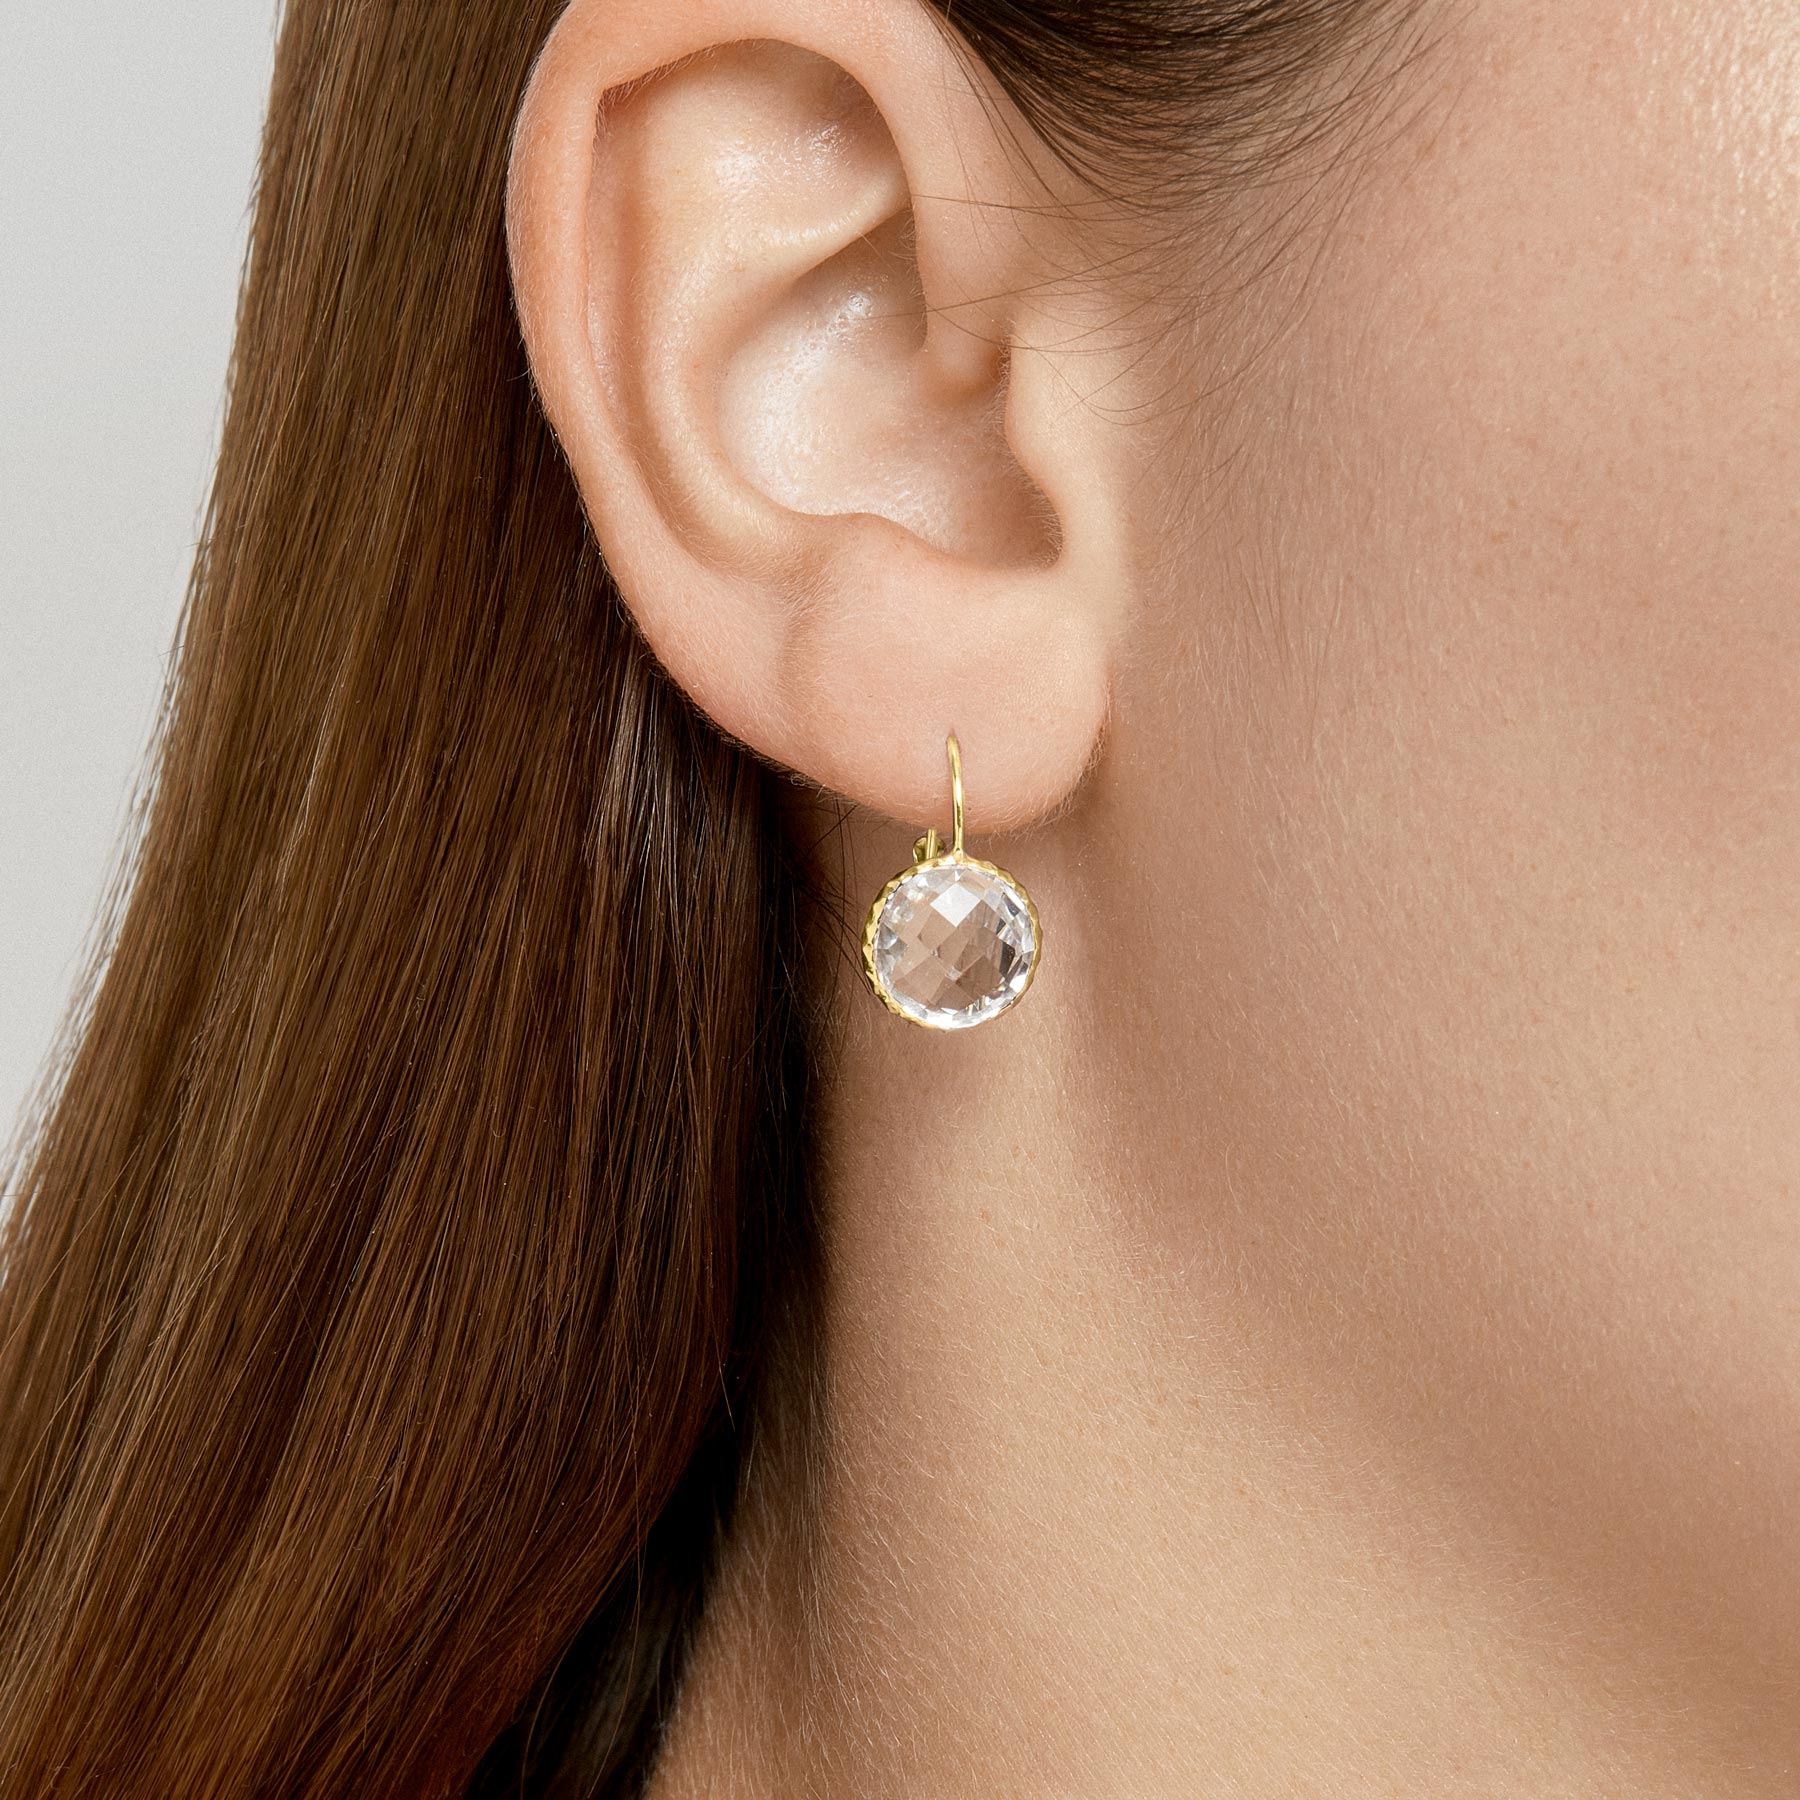 Buy White Topaz Earrings Topaz Stud Earrings 14k Gold Stud Online in India   Etsy